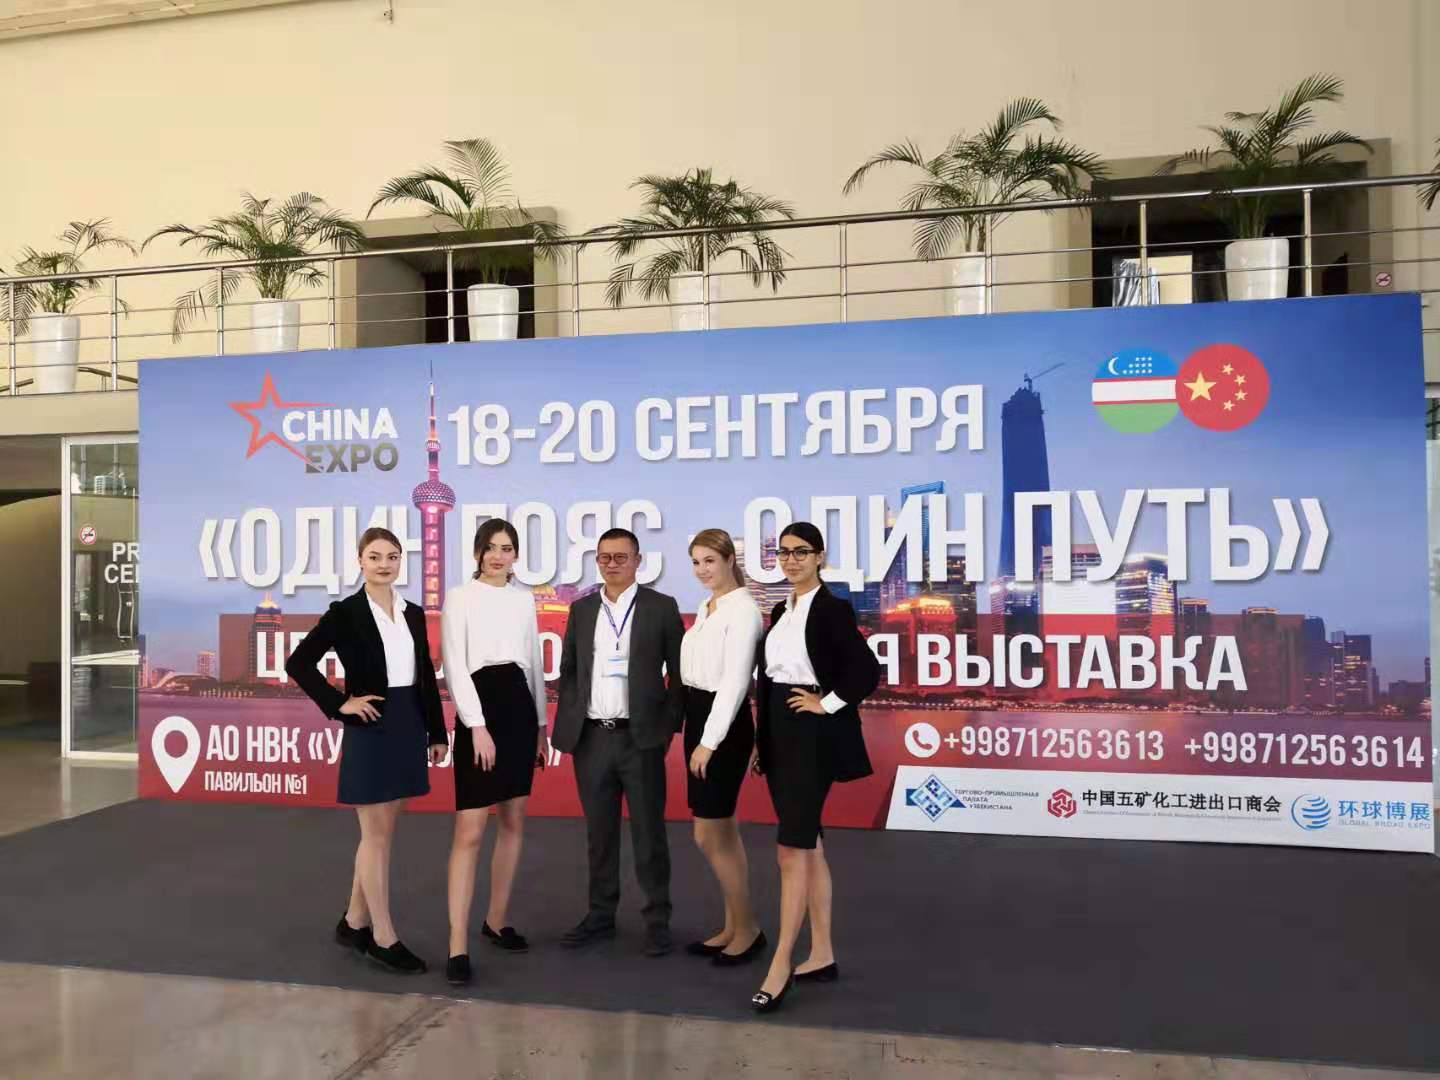 Pada 17 September 2019, Pameran Asia China Belt and Road Initiative pertama telah diadakan di Pusat Pameran Tashkent di Uzbekistan.